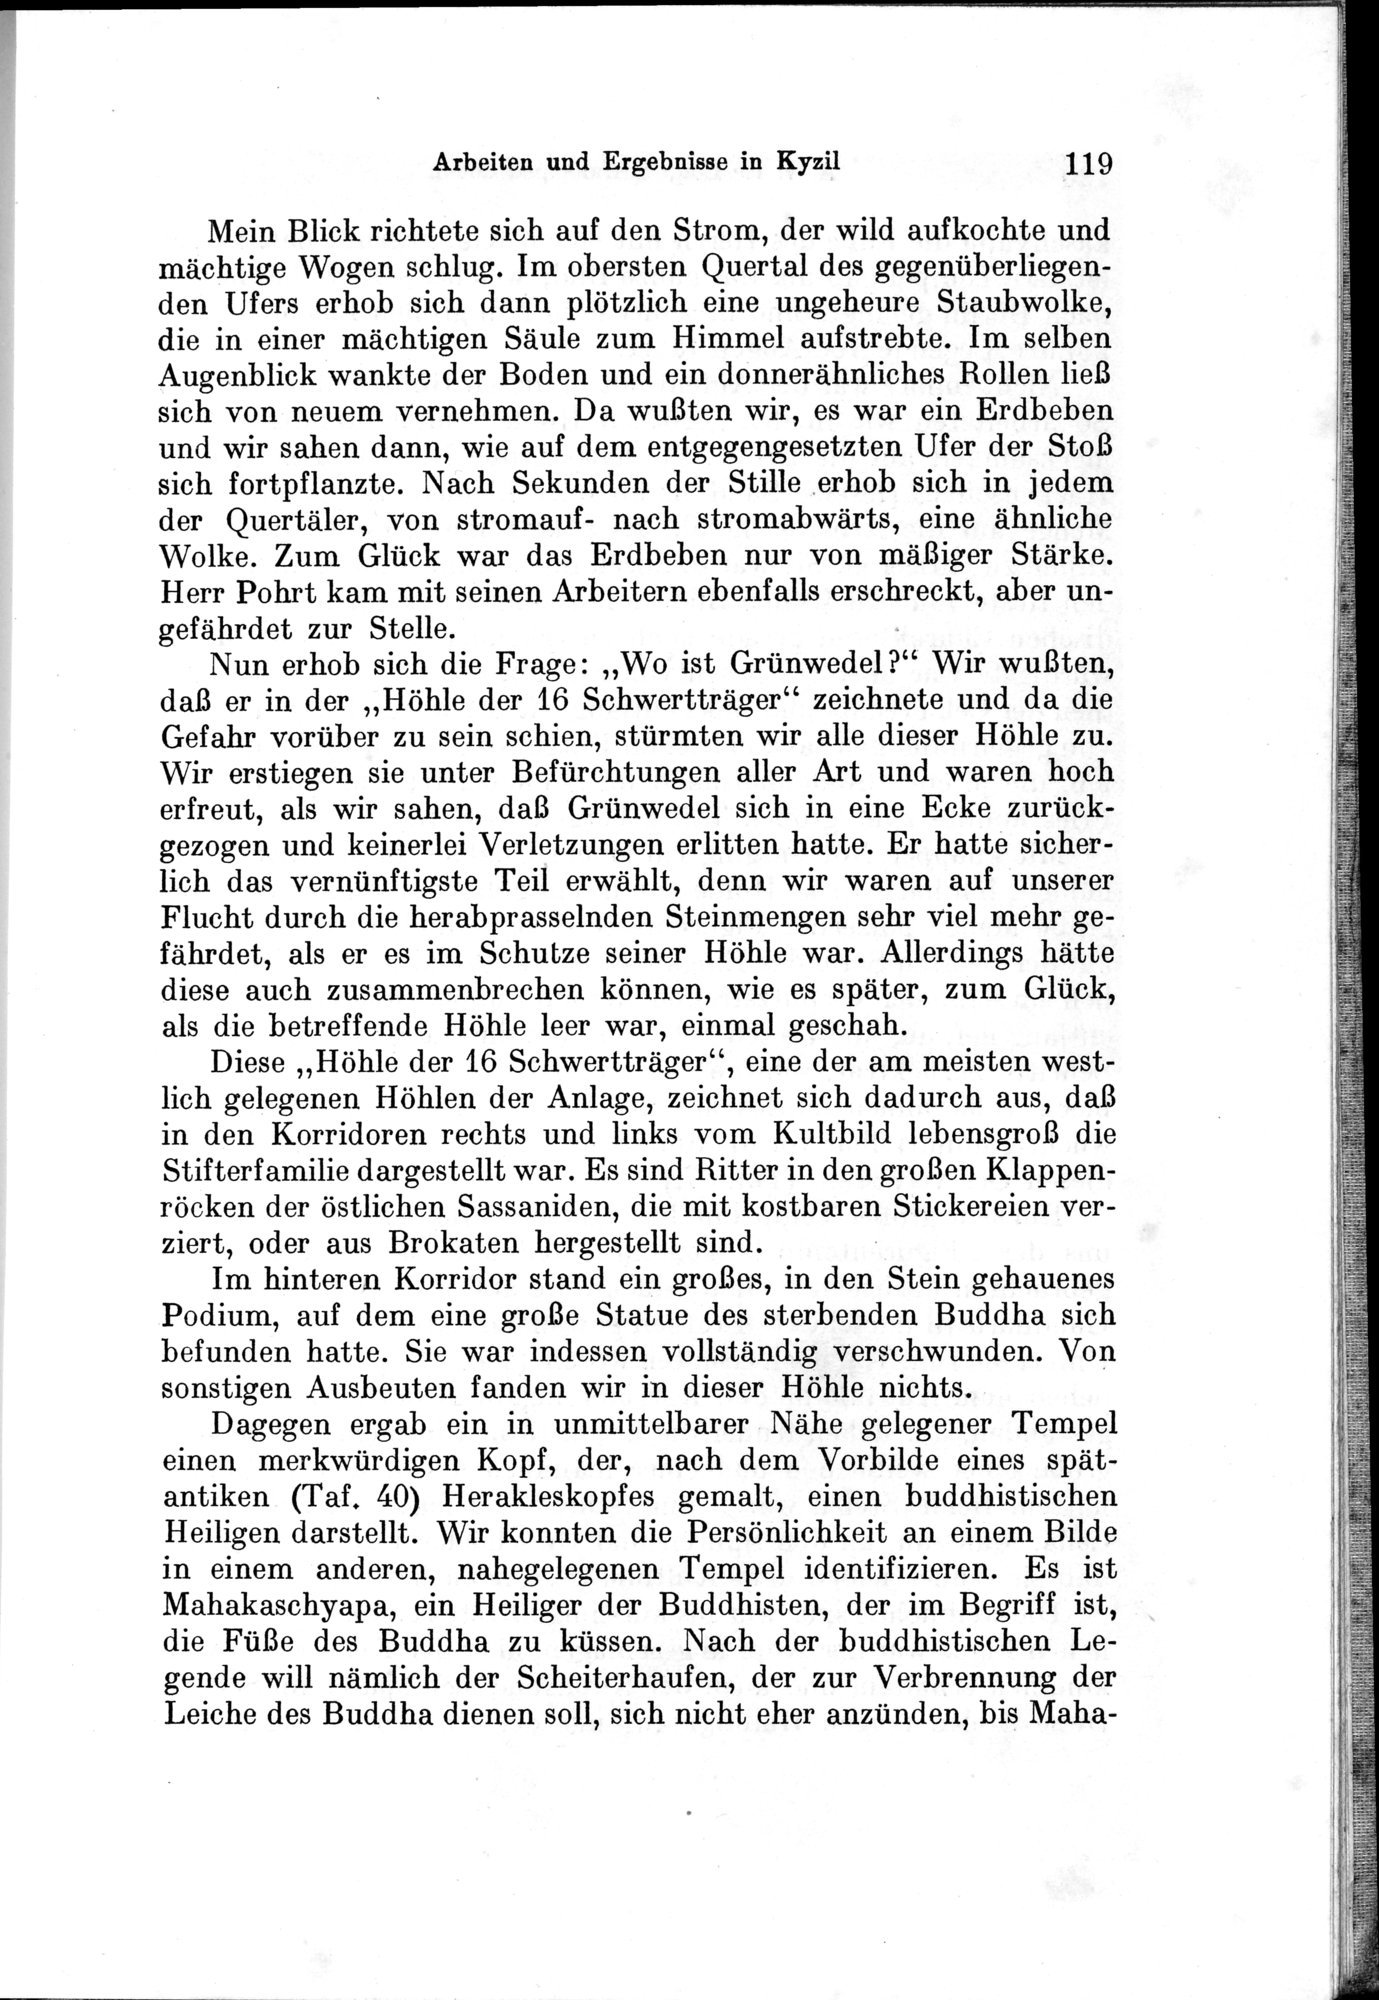 Auf Hellas Spuren in Ostturkistan : vol.1 / Page 171 (Grayscale High Resolution Image)